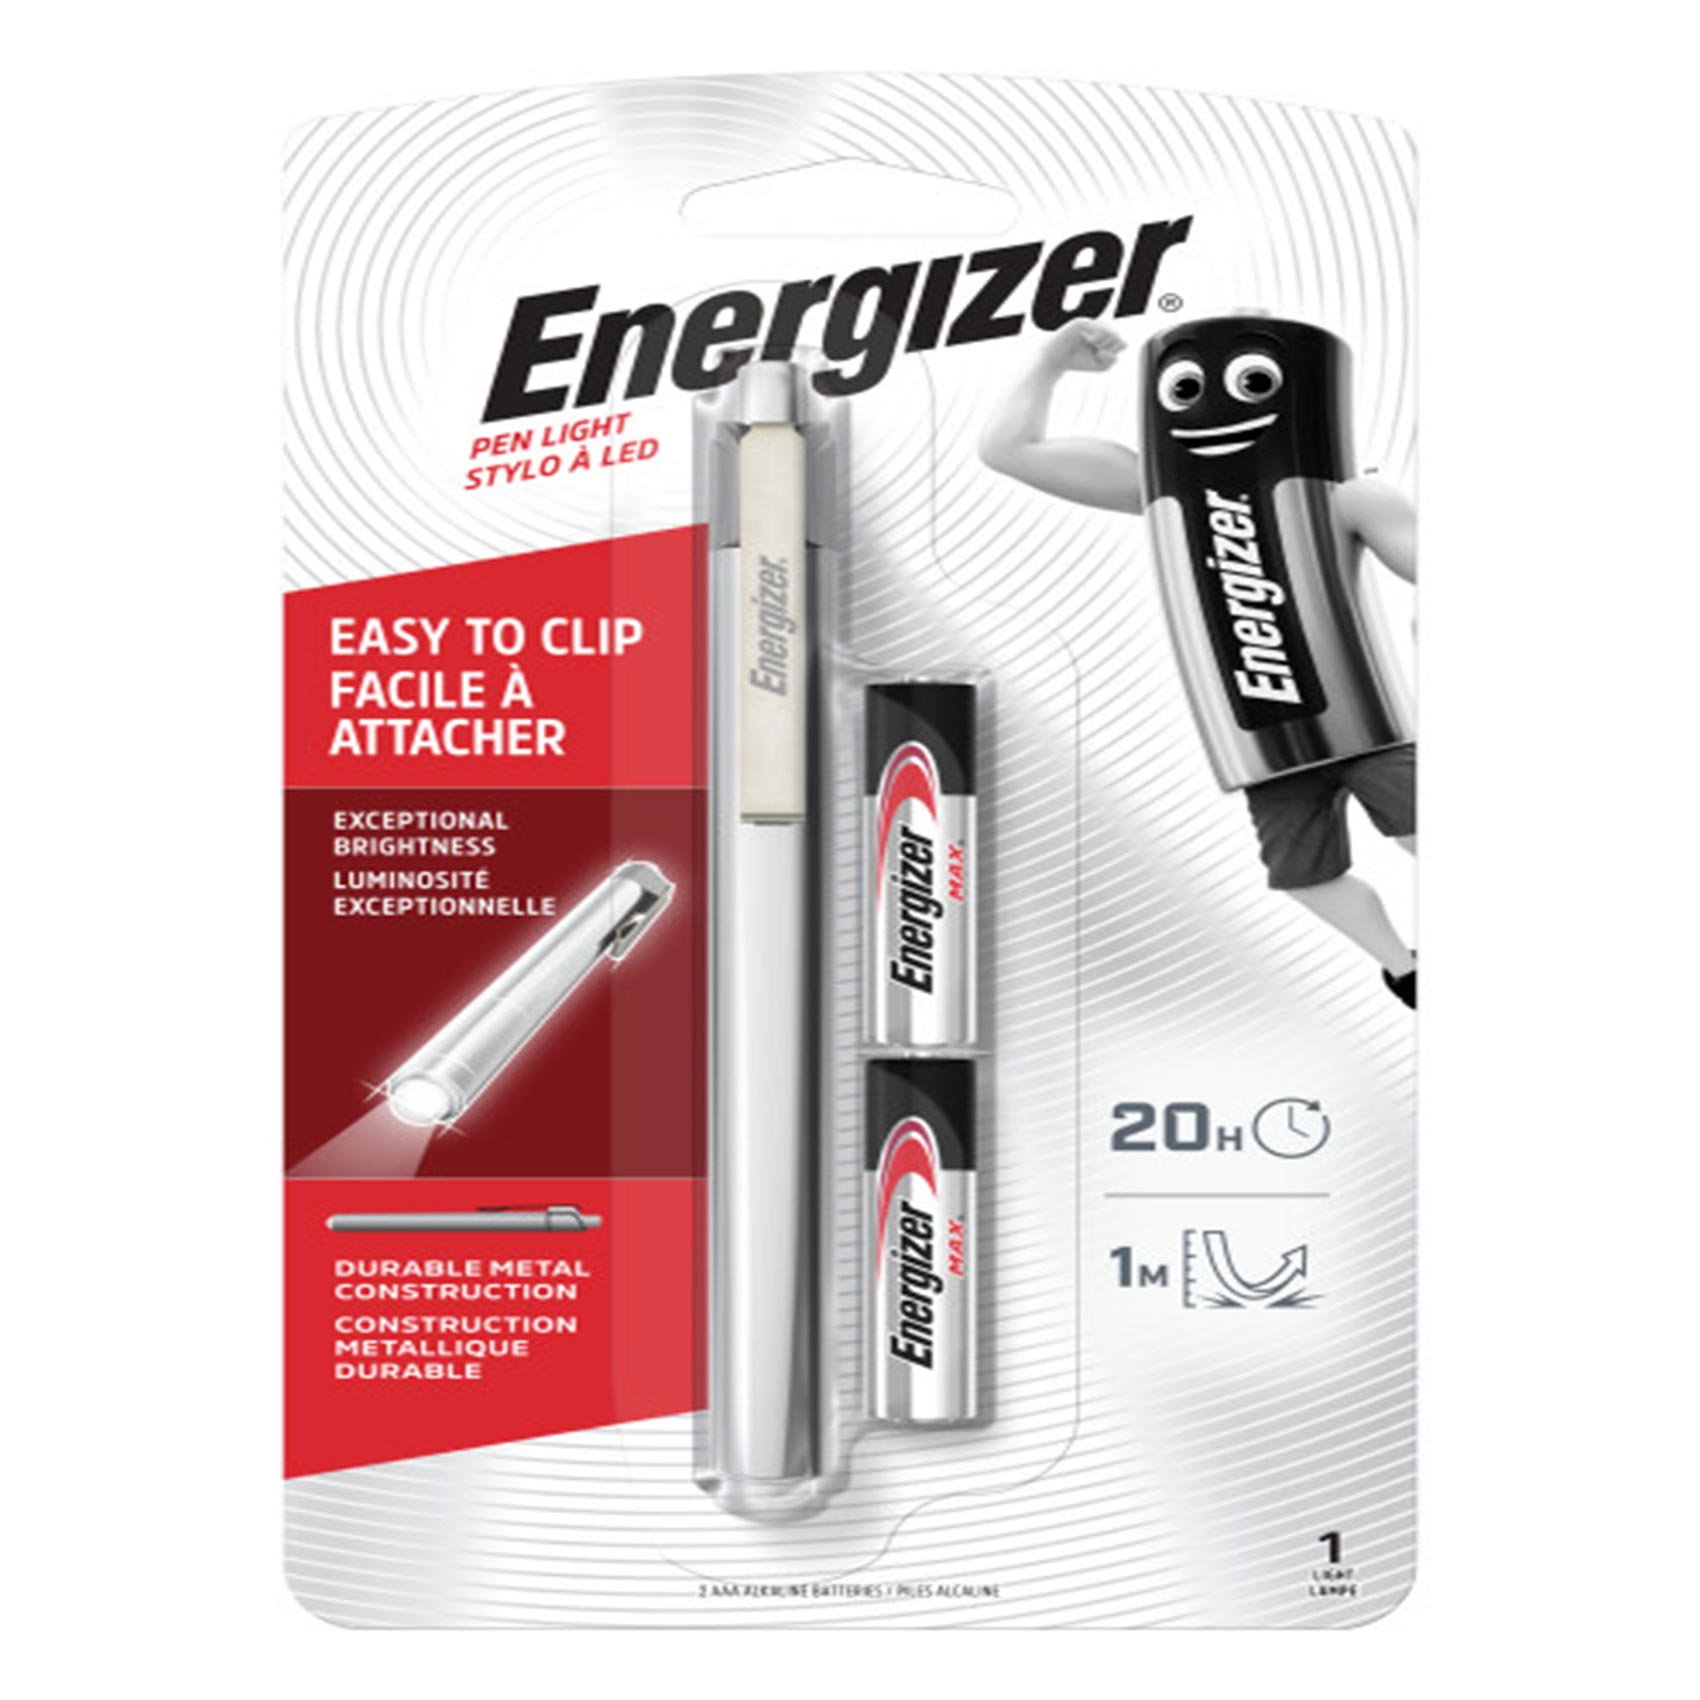 Energizer Pen Light Metal 22